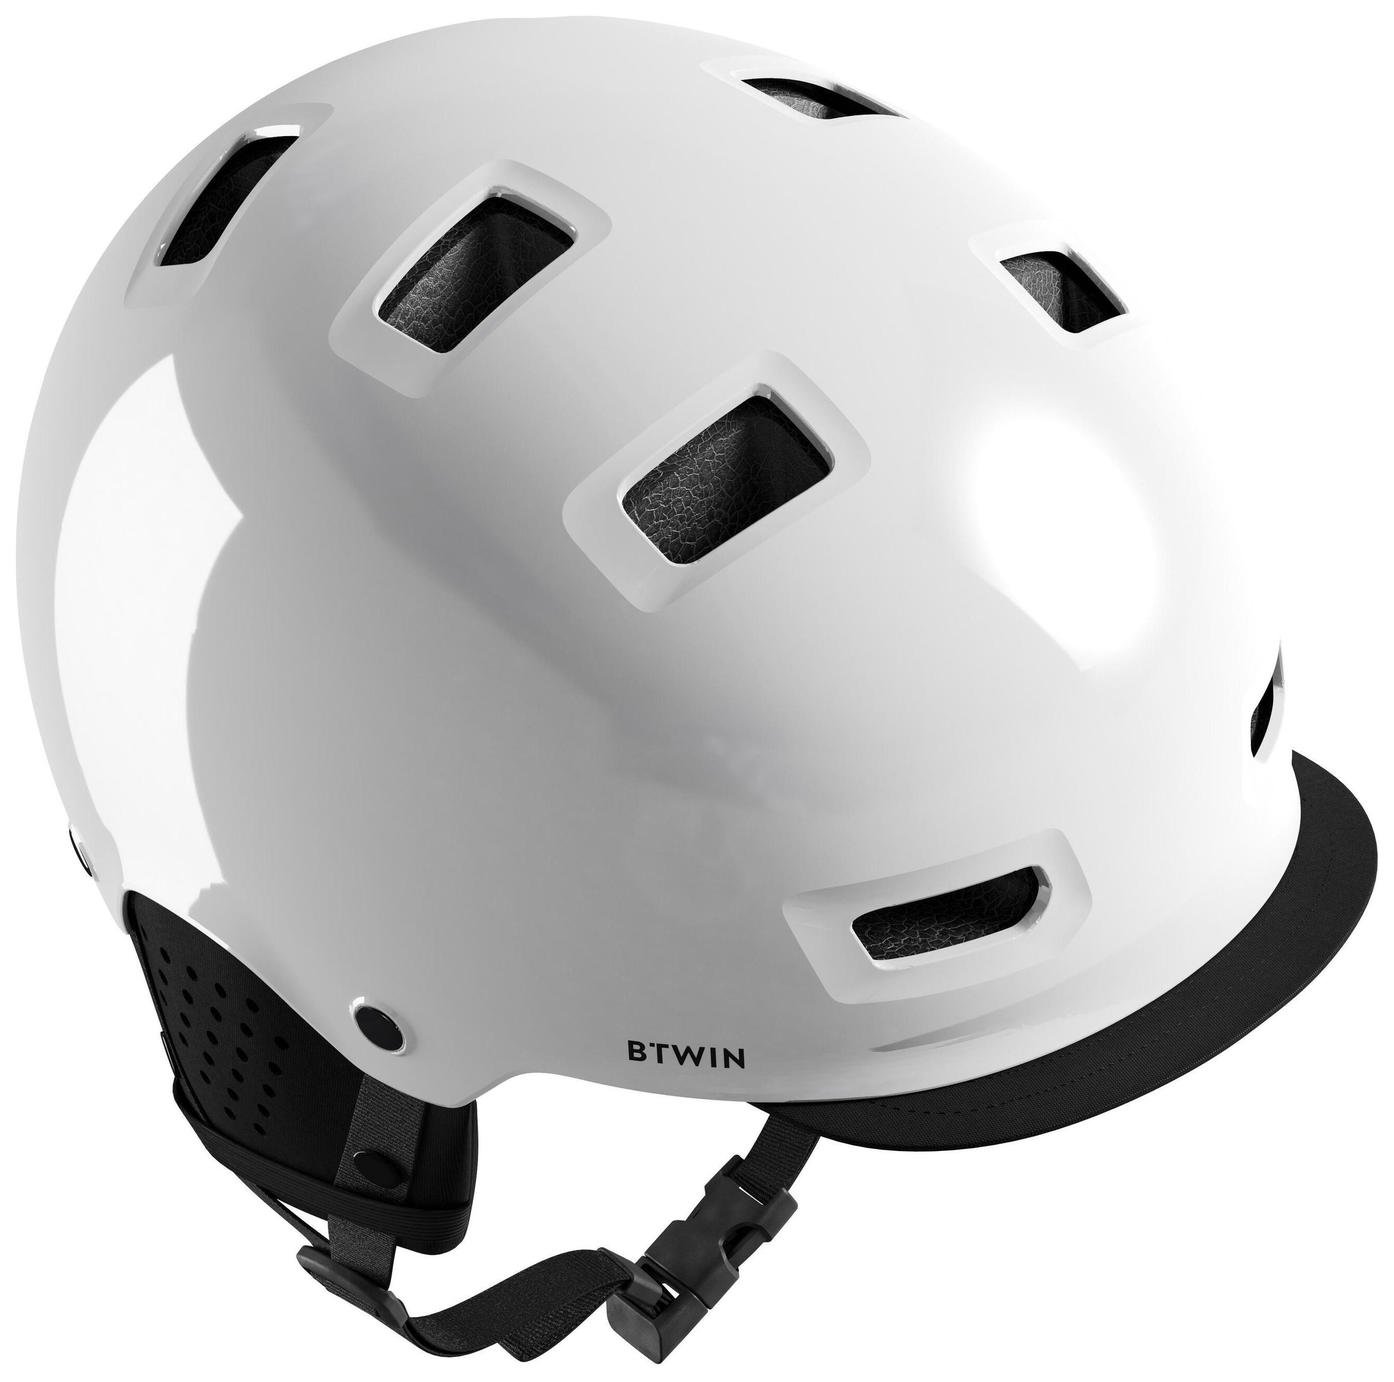 Decathlon Commuting Adult Bike Helmet - White, 55-59cm